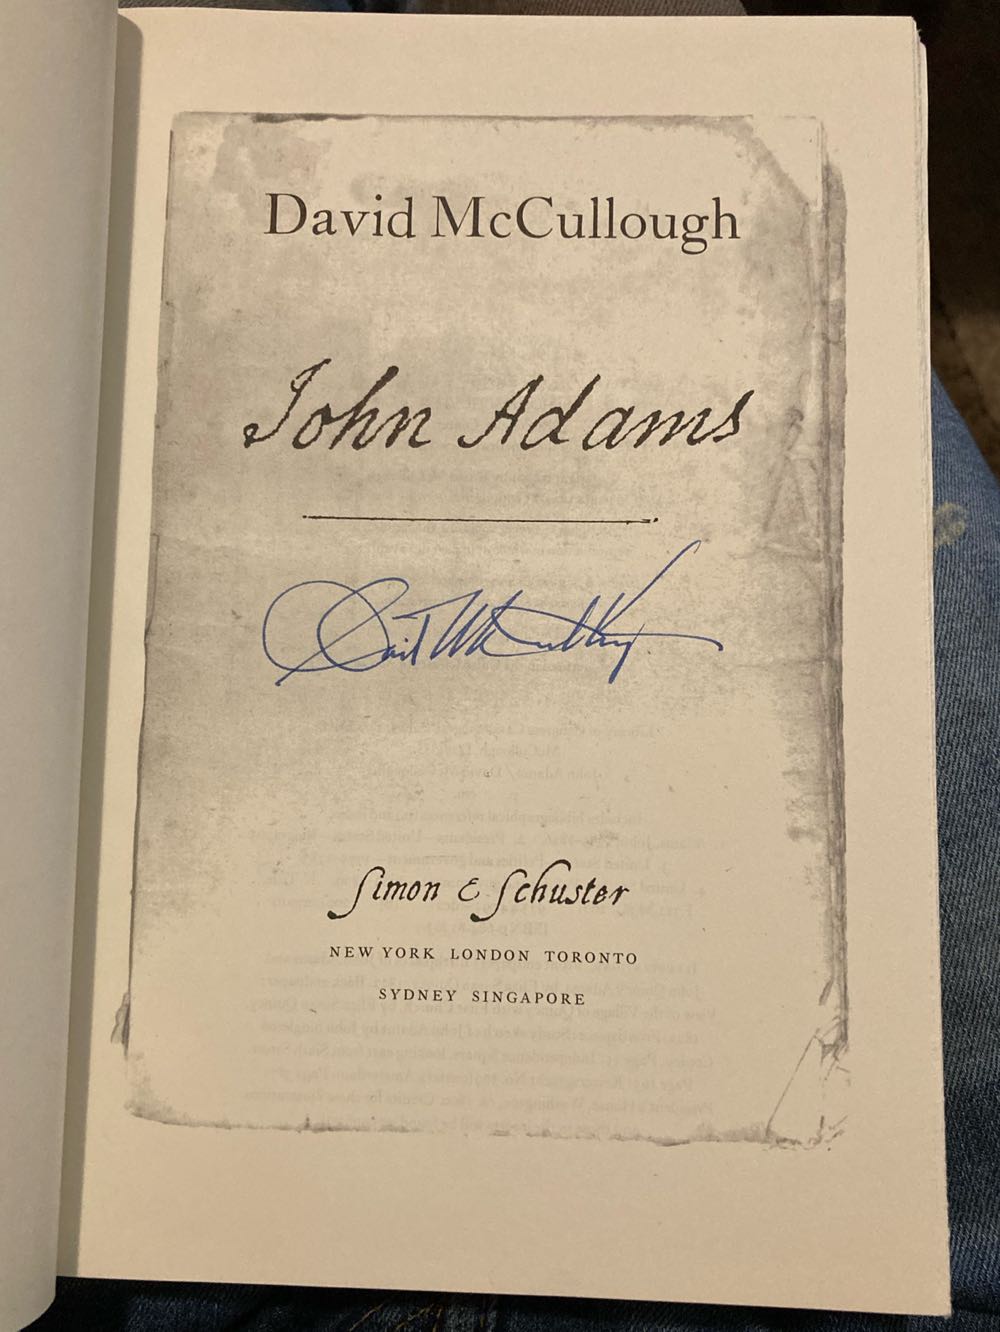 John Adams - David McCullough (Simon & Schuster - Hardcover) book collectible [Barcode 9780684813639] - Main Image 3